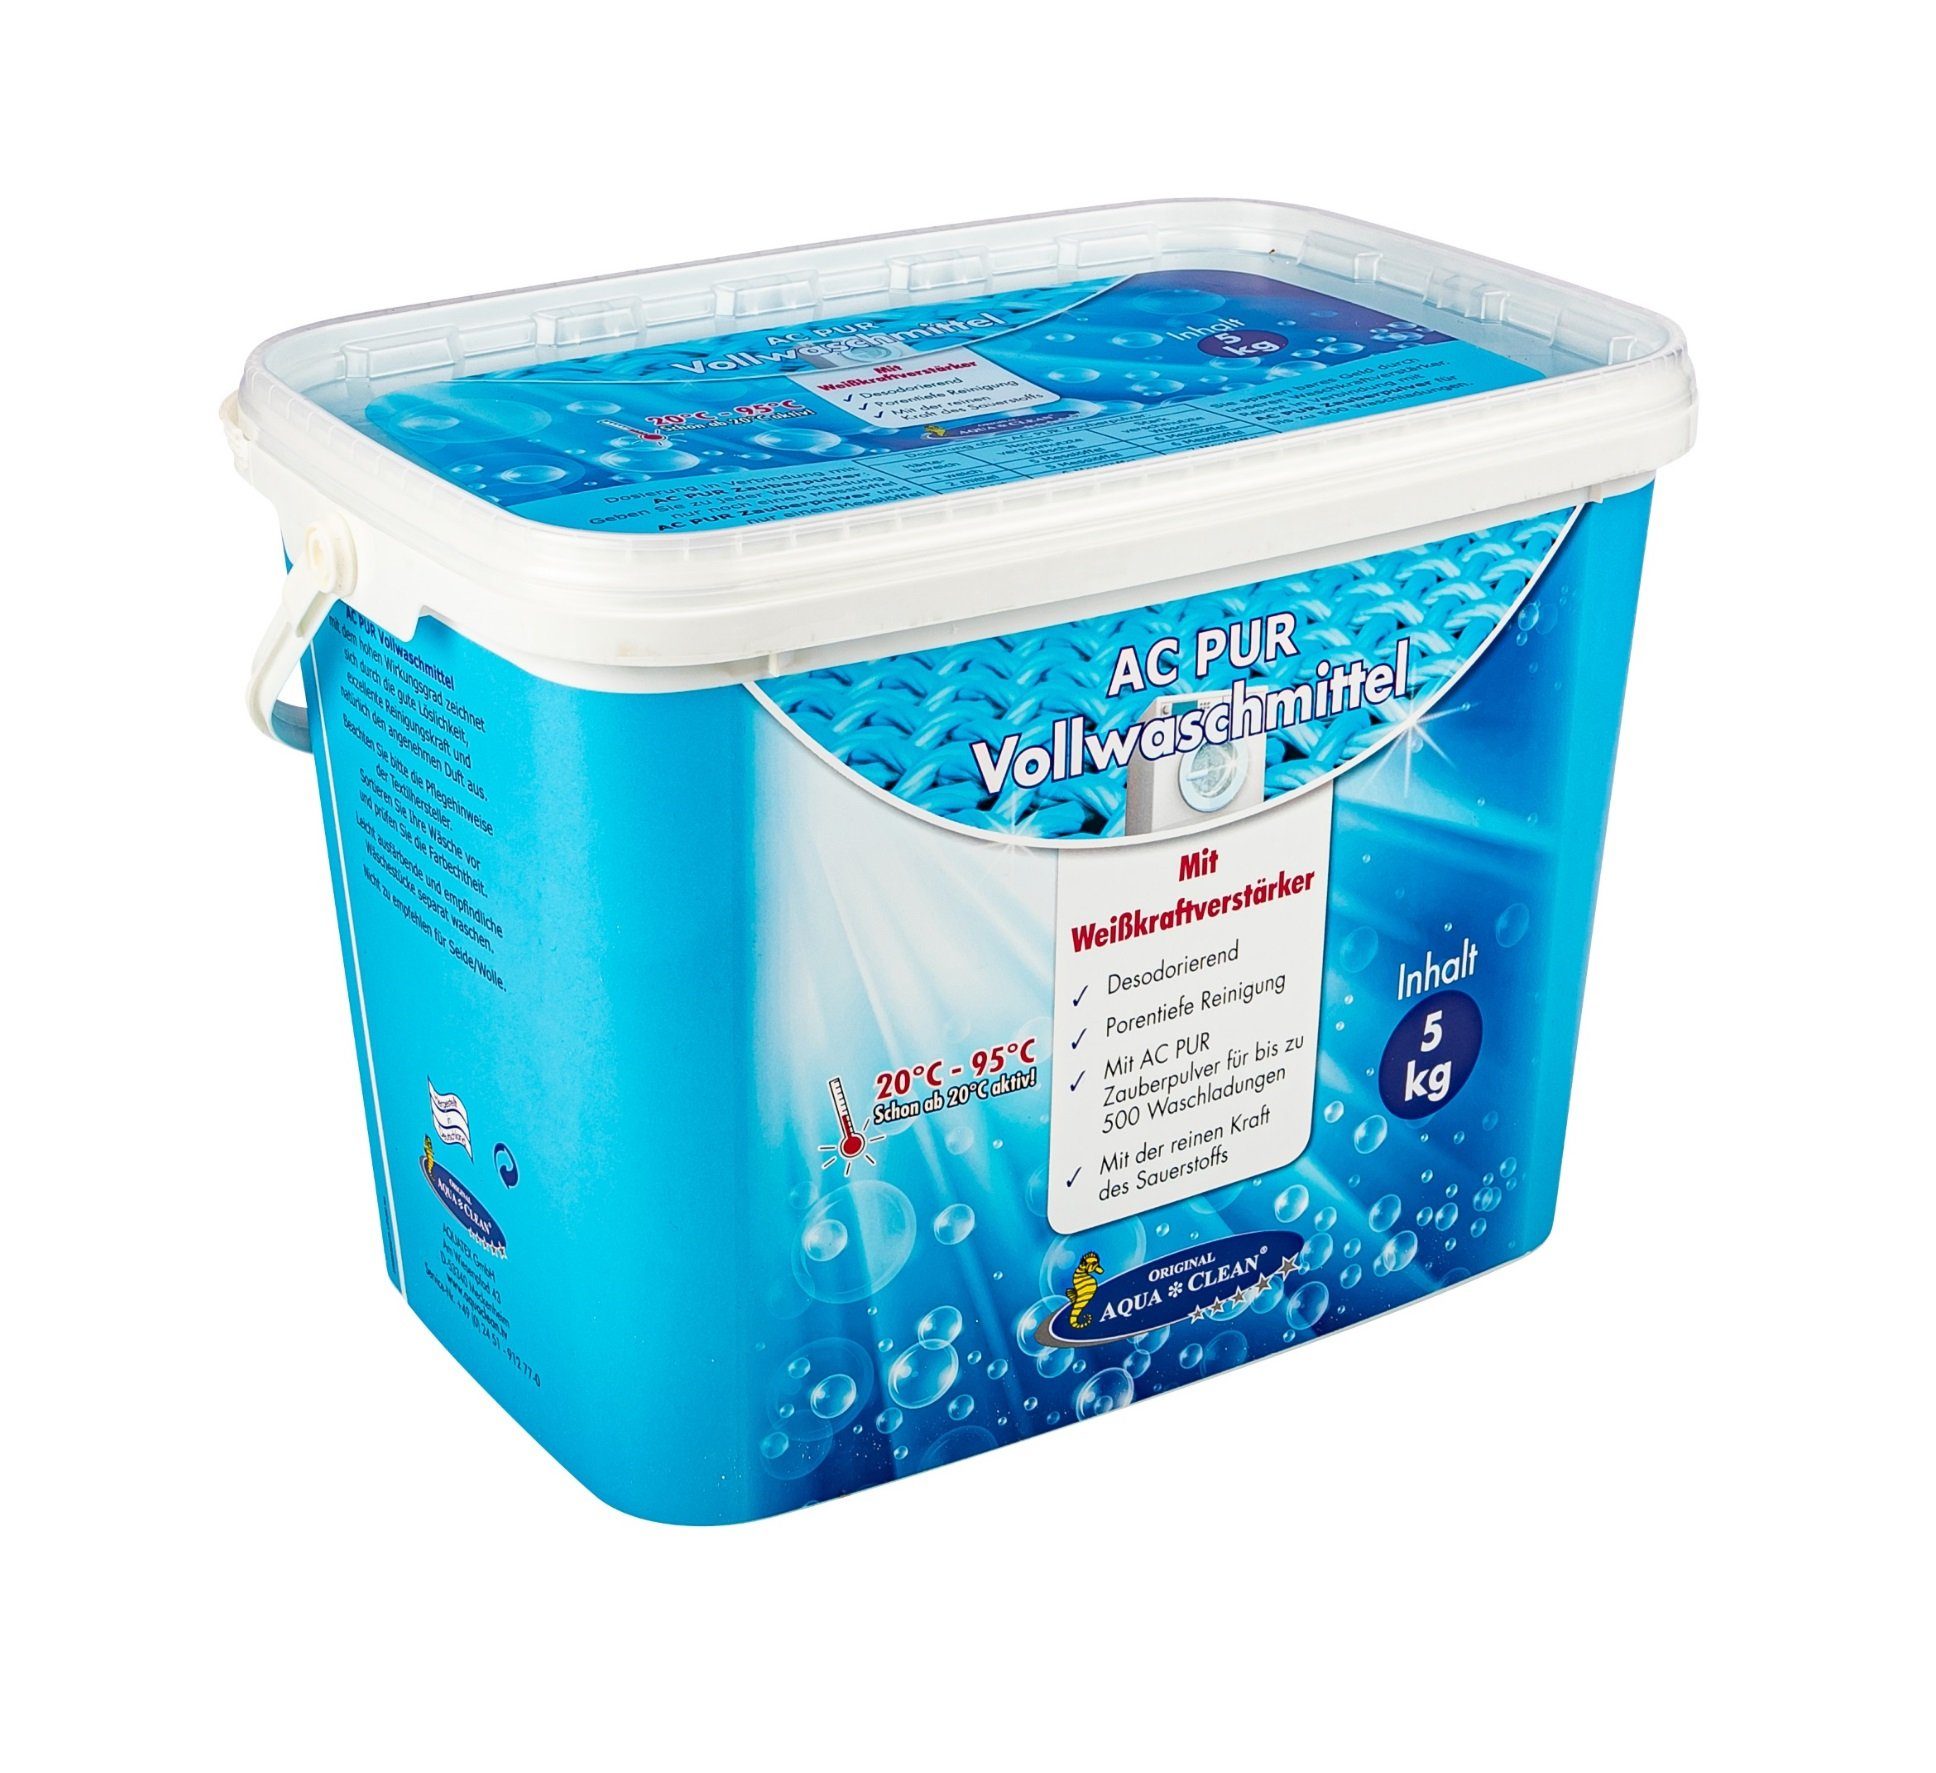 AQUA CLEAN AC 5kg) Farb-& Vollwaschmittel Vollwaschmittel (mit und Faserschutz PUR Weisskraftverstärker